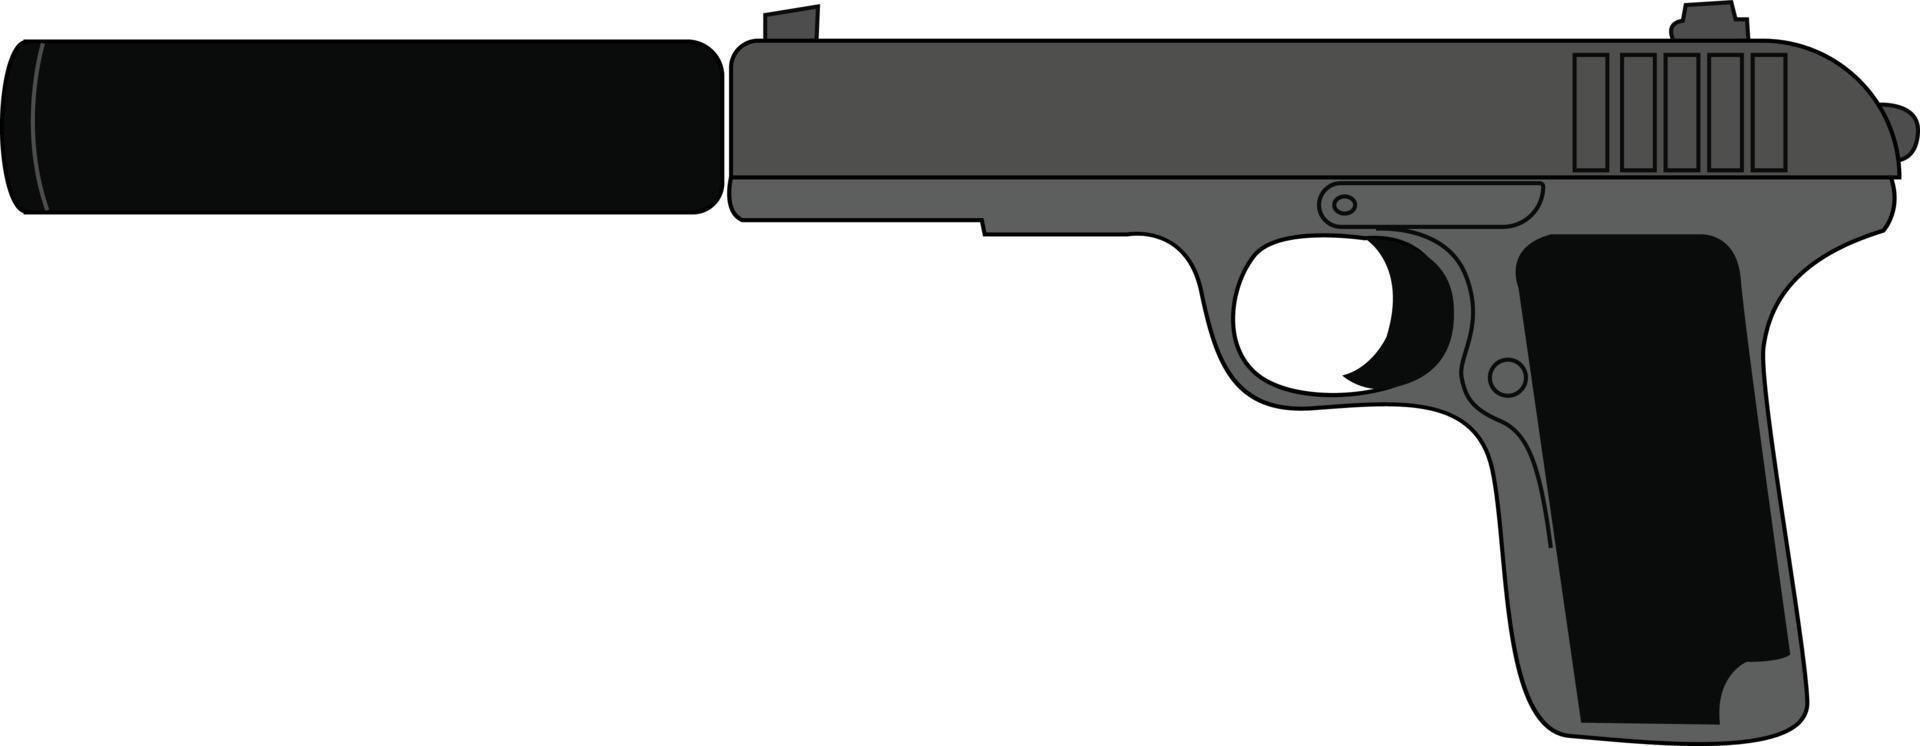 pistola silenciada, ilustração, vetor em fundo branco.